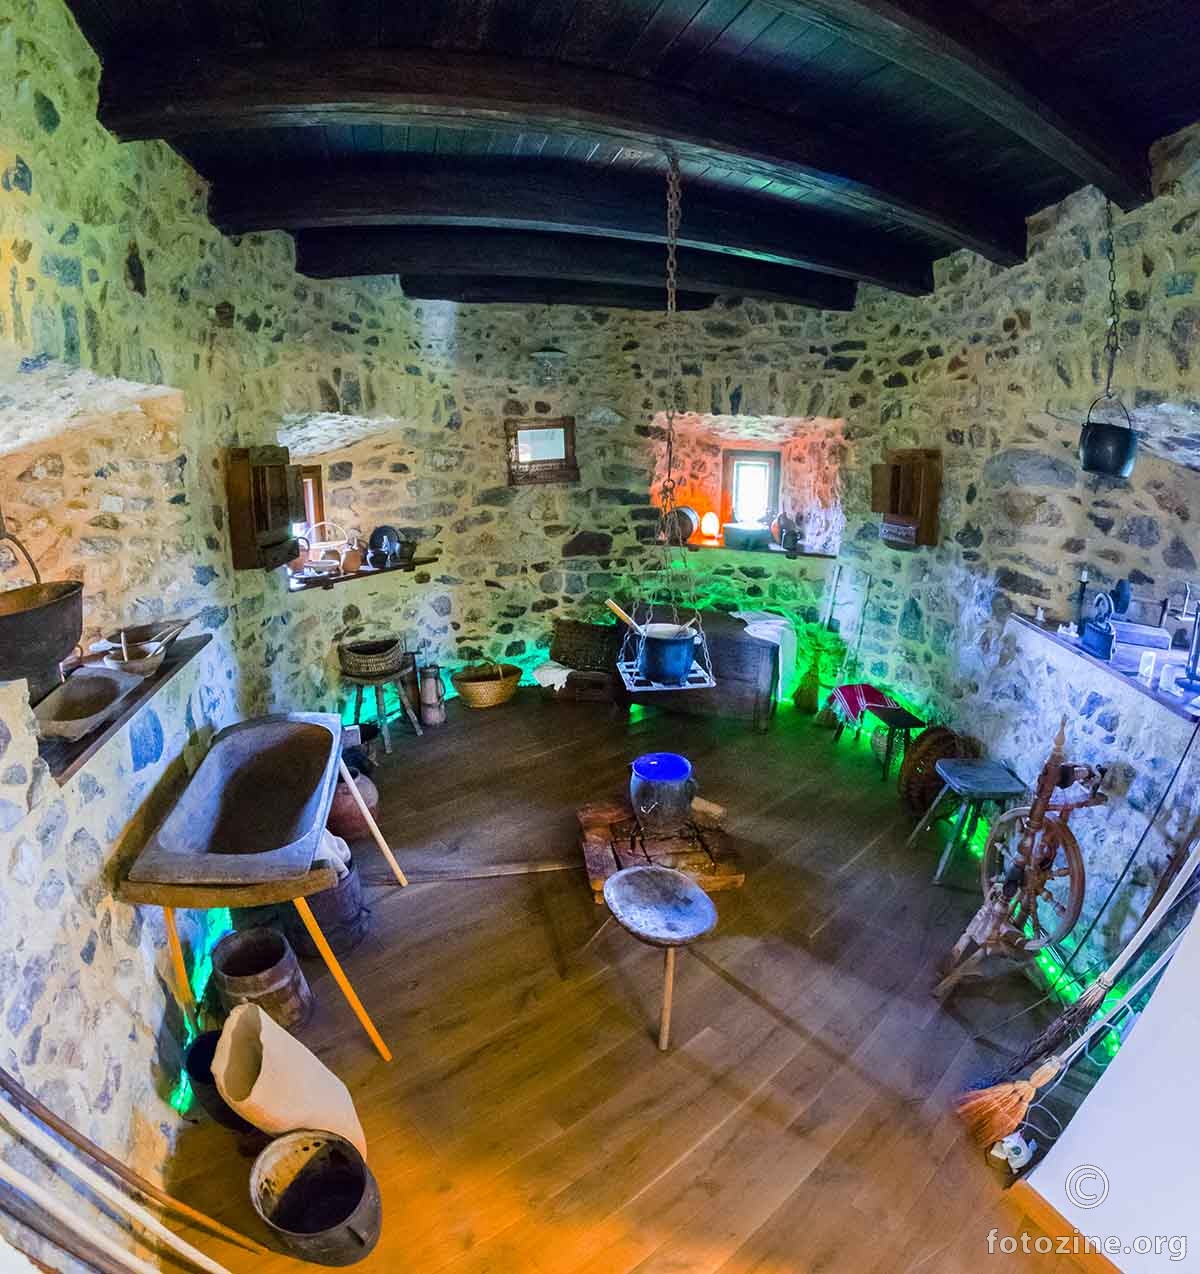 Marina kuhinja, Dvorac Dubovac, Karlovac.